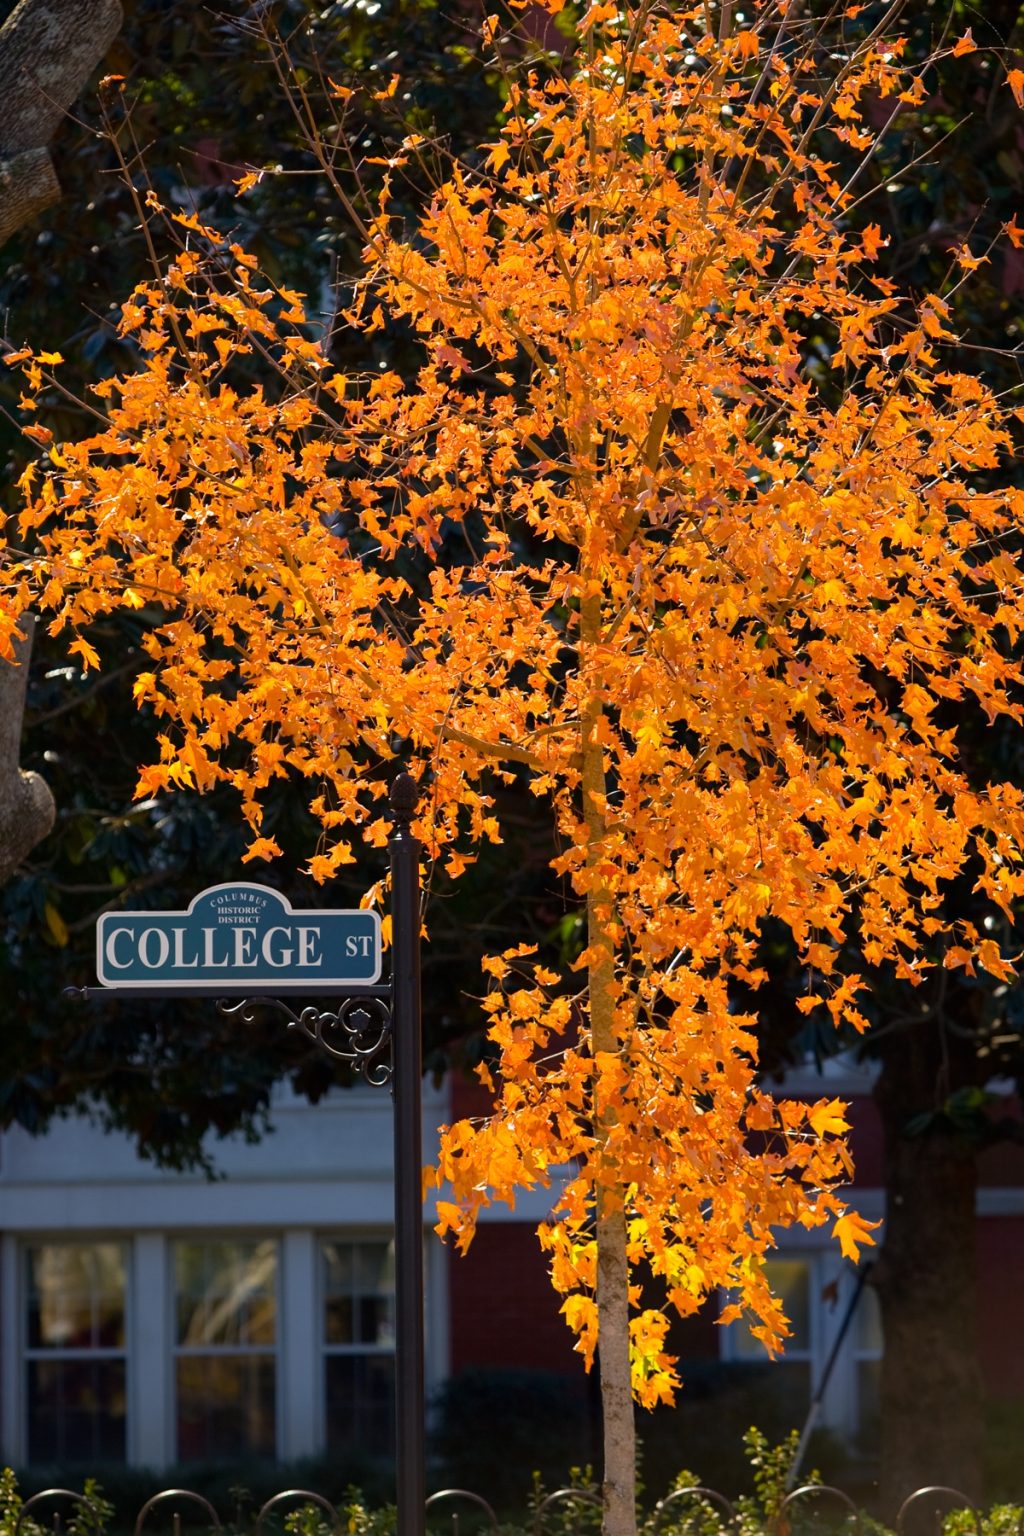 College Street sign under an orange tree on campus